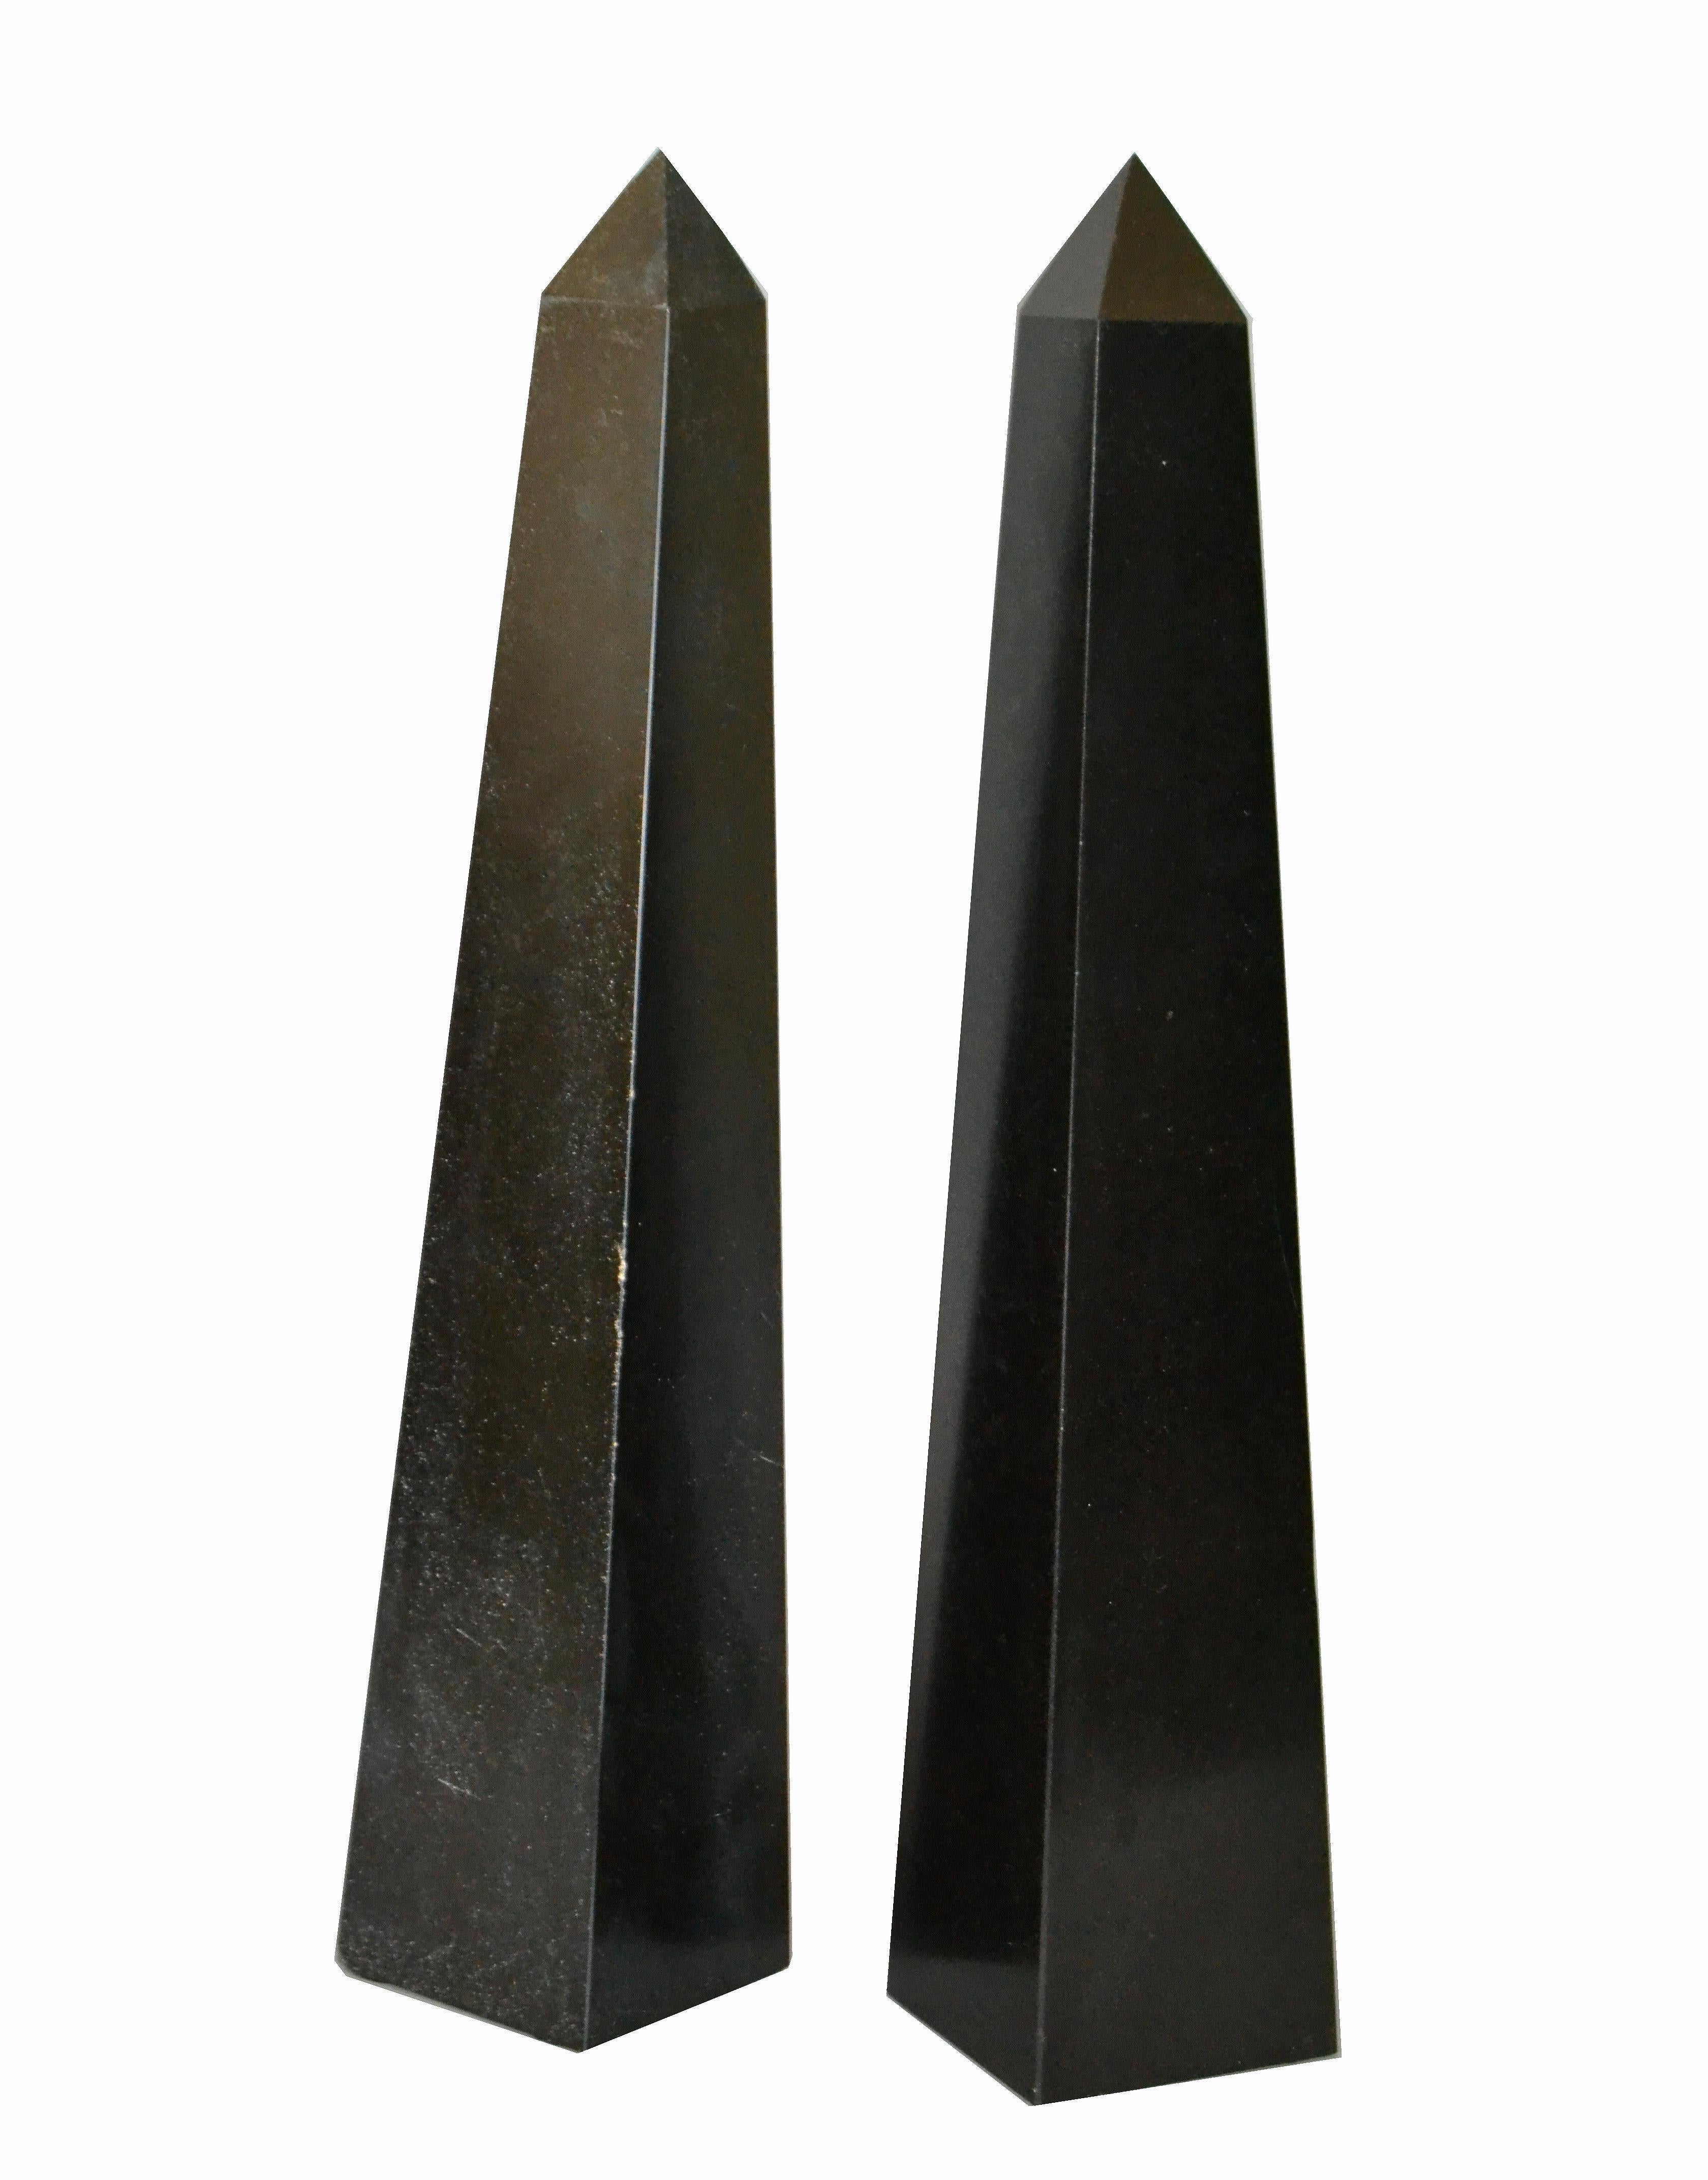 American Pair of Mid-Century Modern Black Marble Obelisks